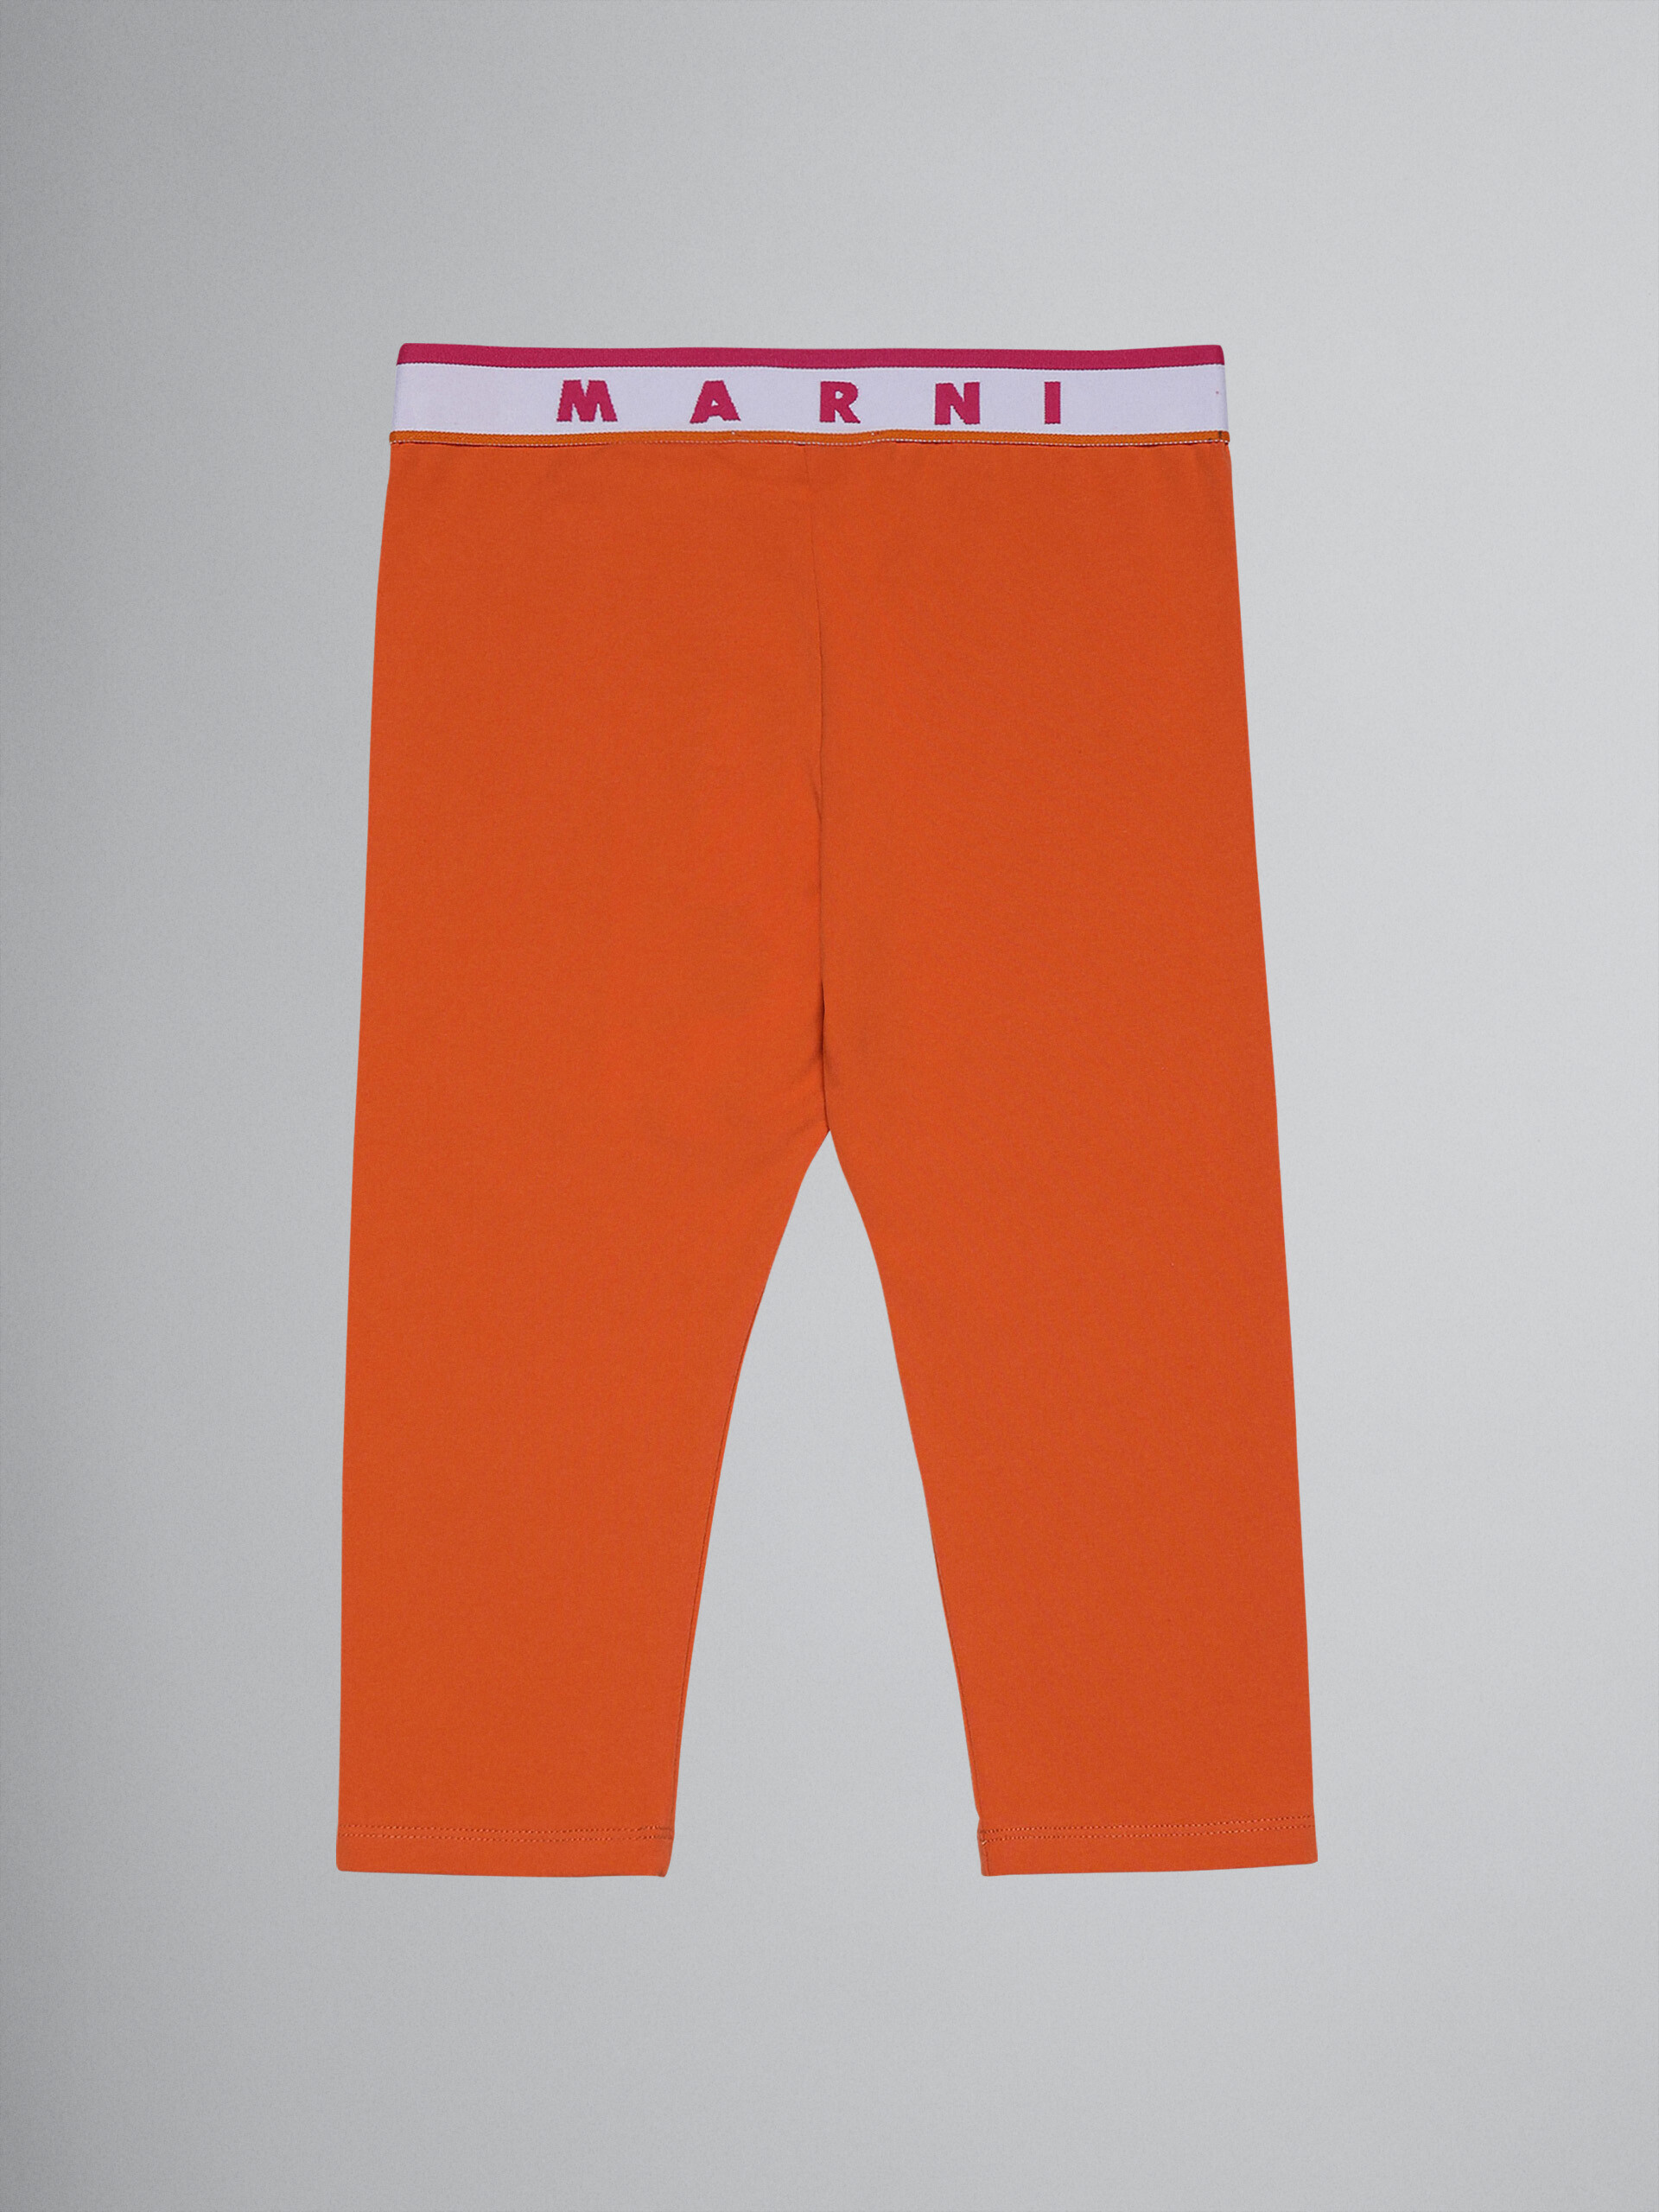 Leggings a la rodilla de jersey elástico naranja con logotipo - Pantalones - Image 1